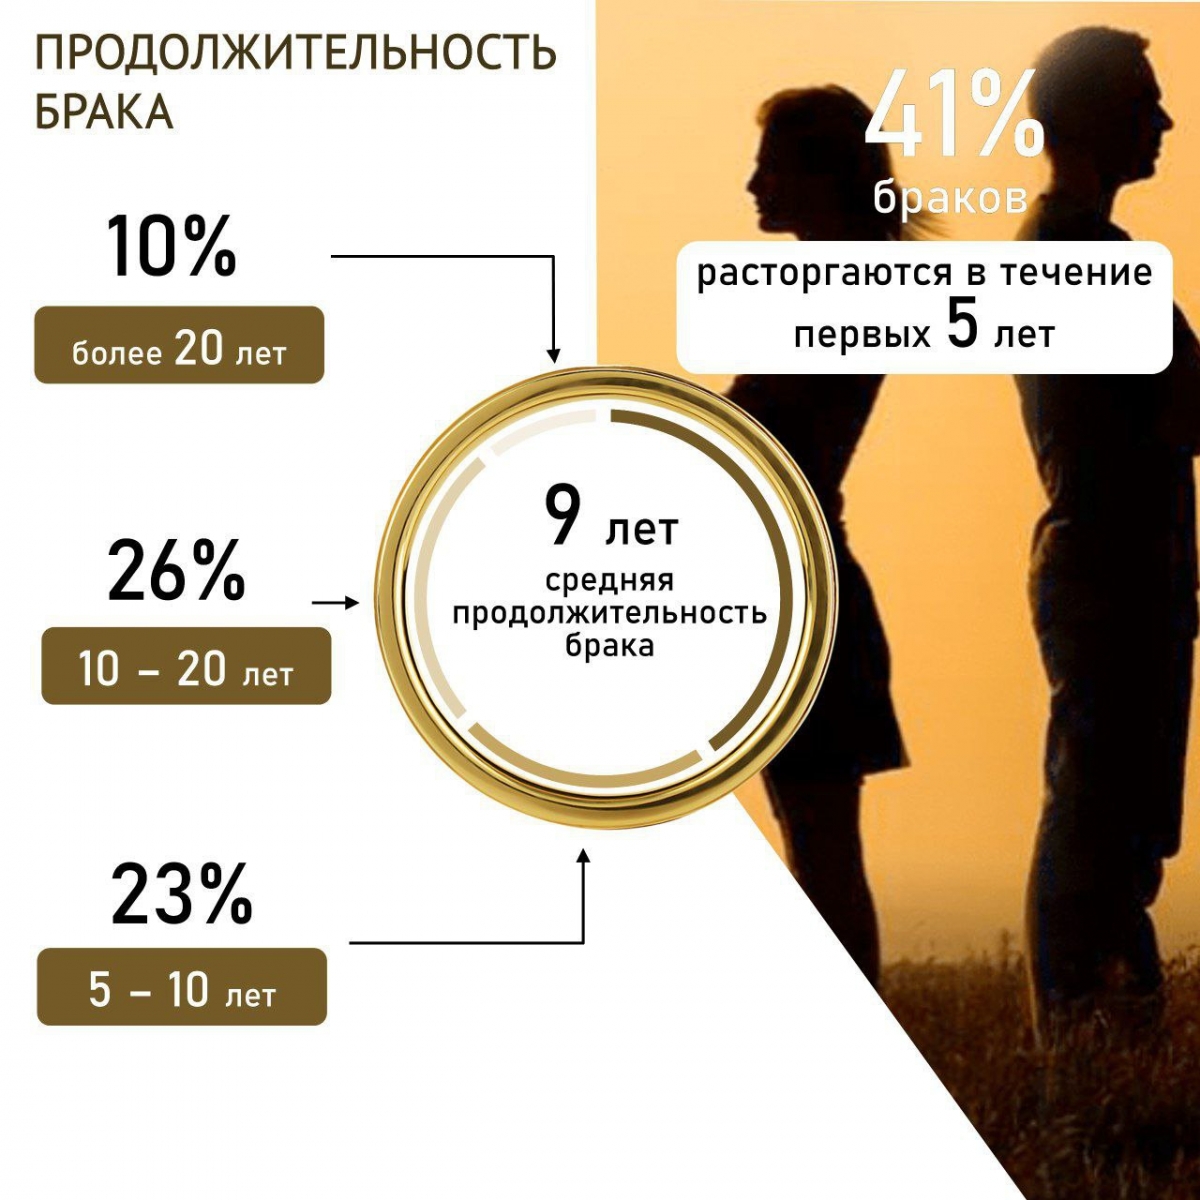 В Калужской области 41% браков расторгаются в первые 5 лет после свадьбы